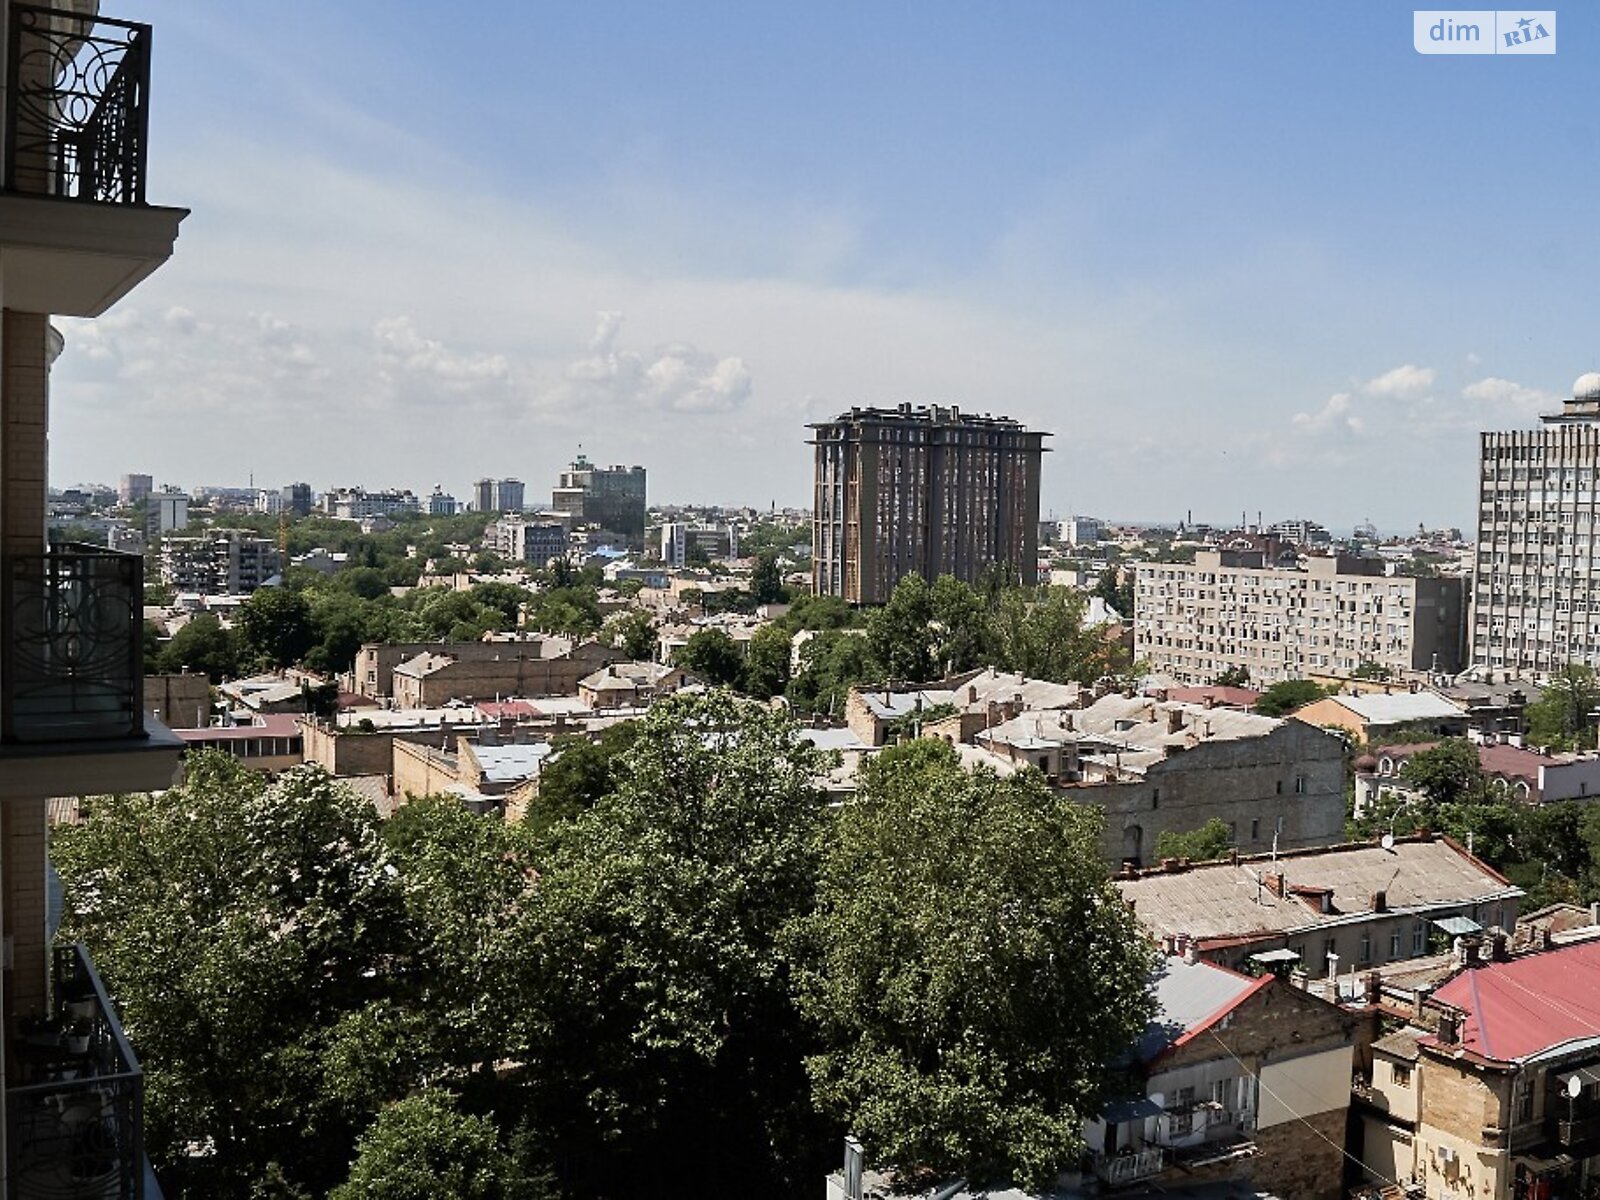 Продажа однокомнатной квартиры в Одессе, на ул. Леонтовича, район Центр фото 1